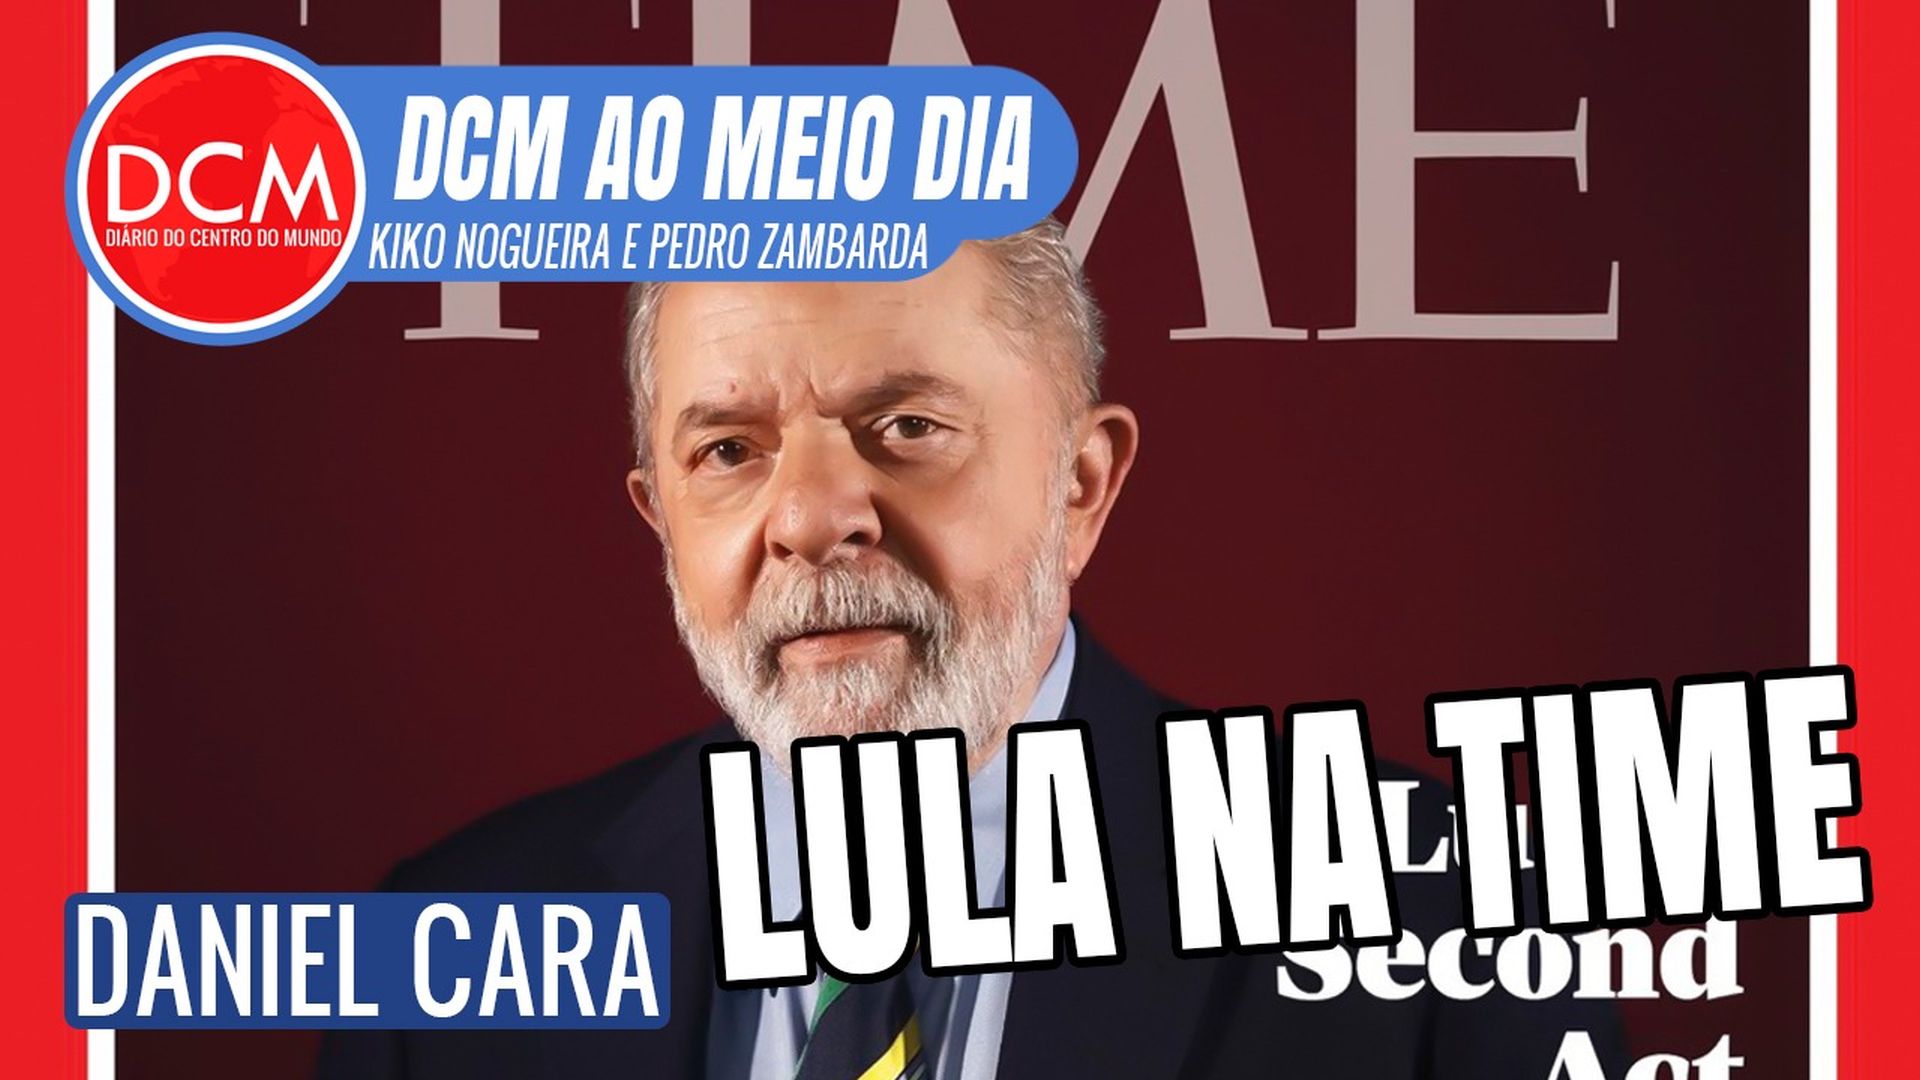 DCM Ao Meio-Dia: Lula na Time é muito mais que uma capa. Entenda